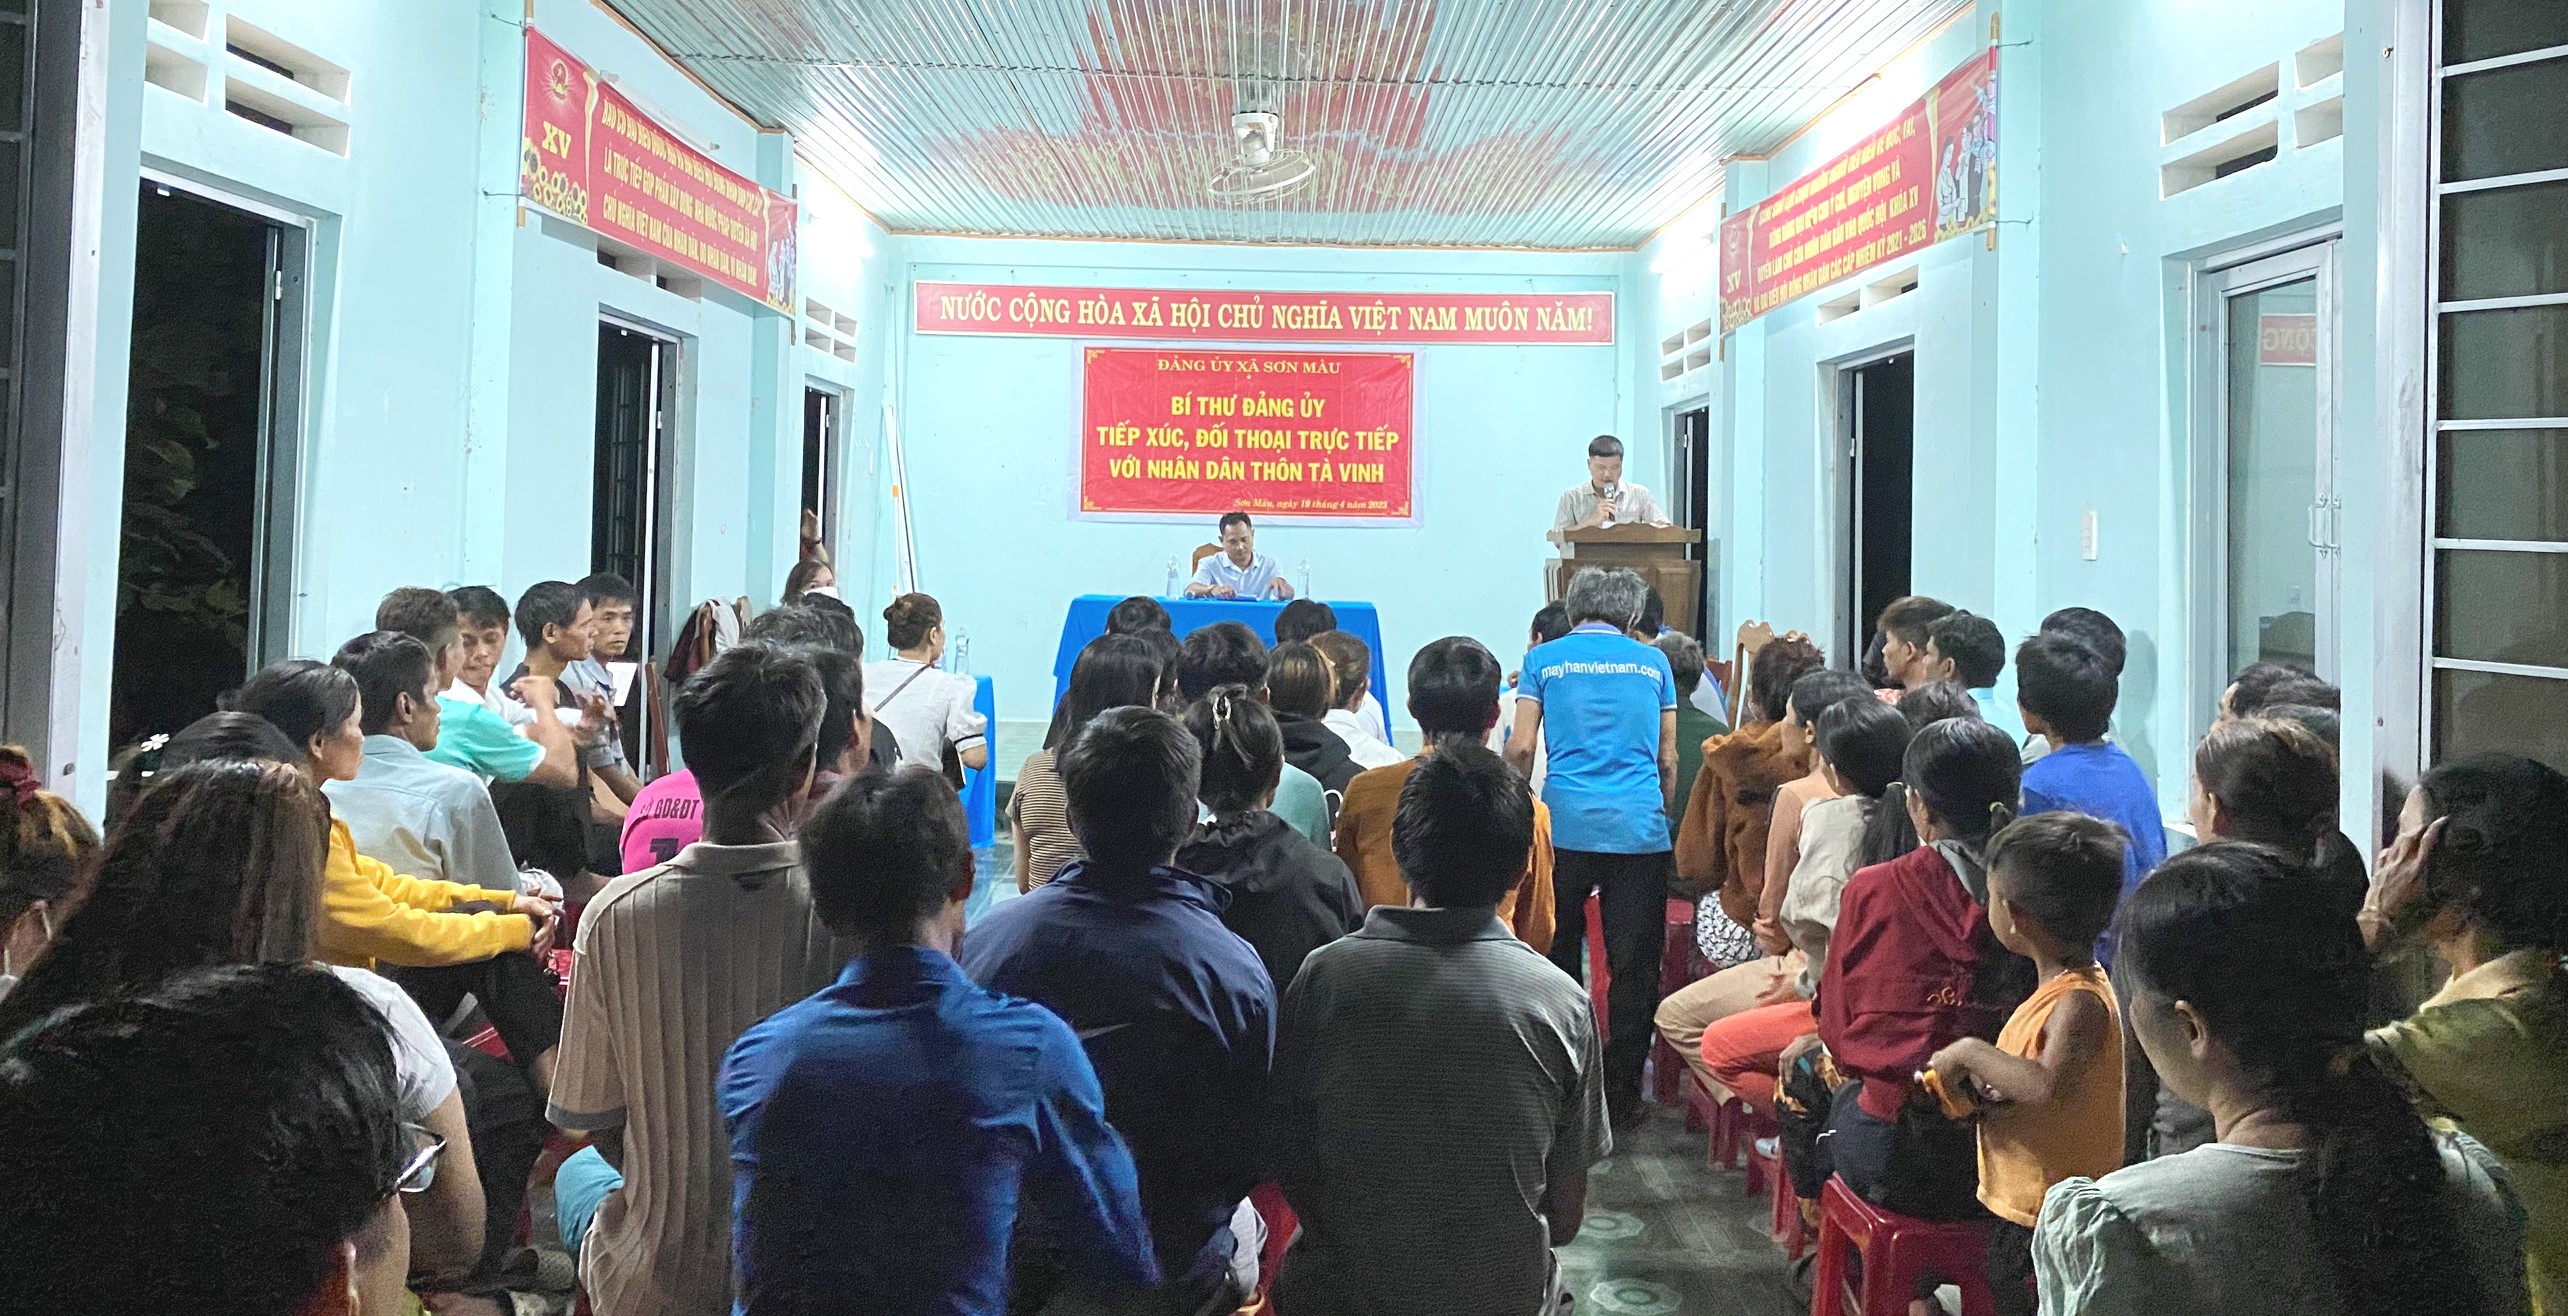 Sơn Màu: Bí thư Đảng ủy tiếp xúc, đối thoại với Nhân dân thôn Tà Vinh